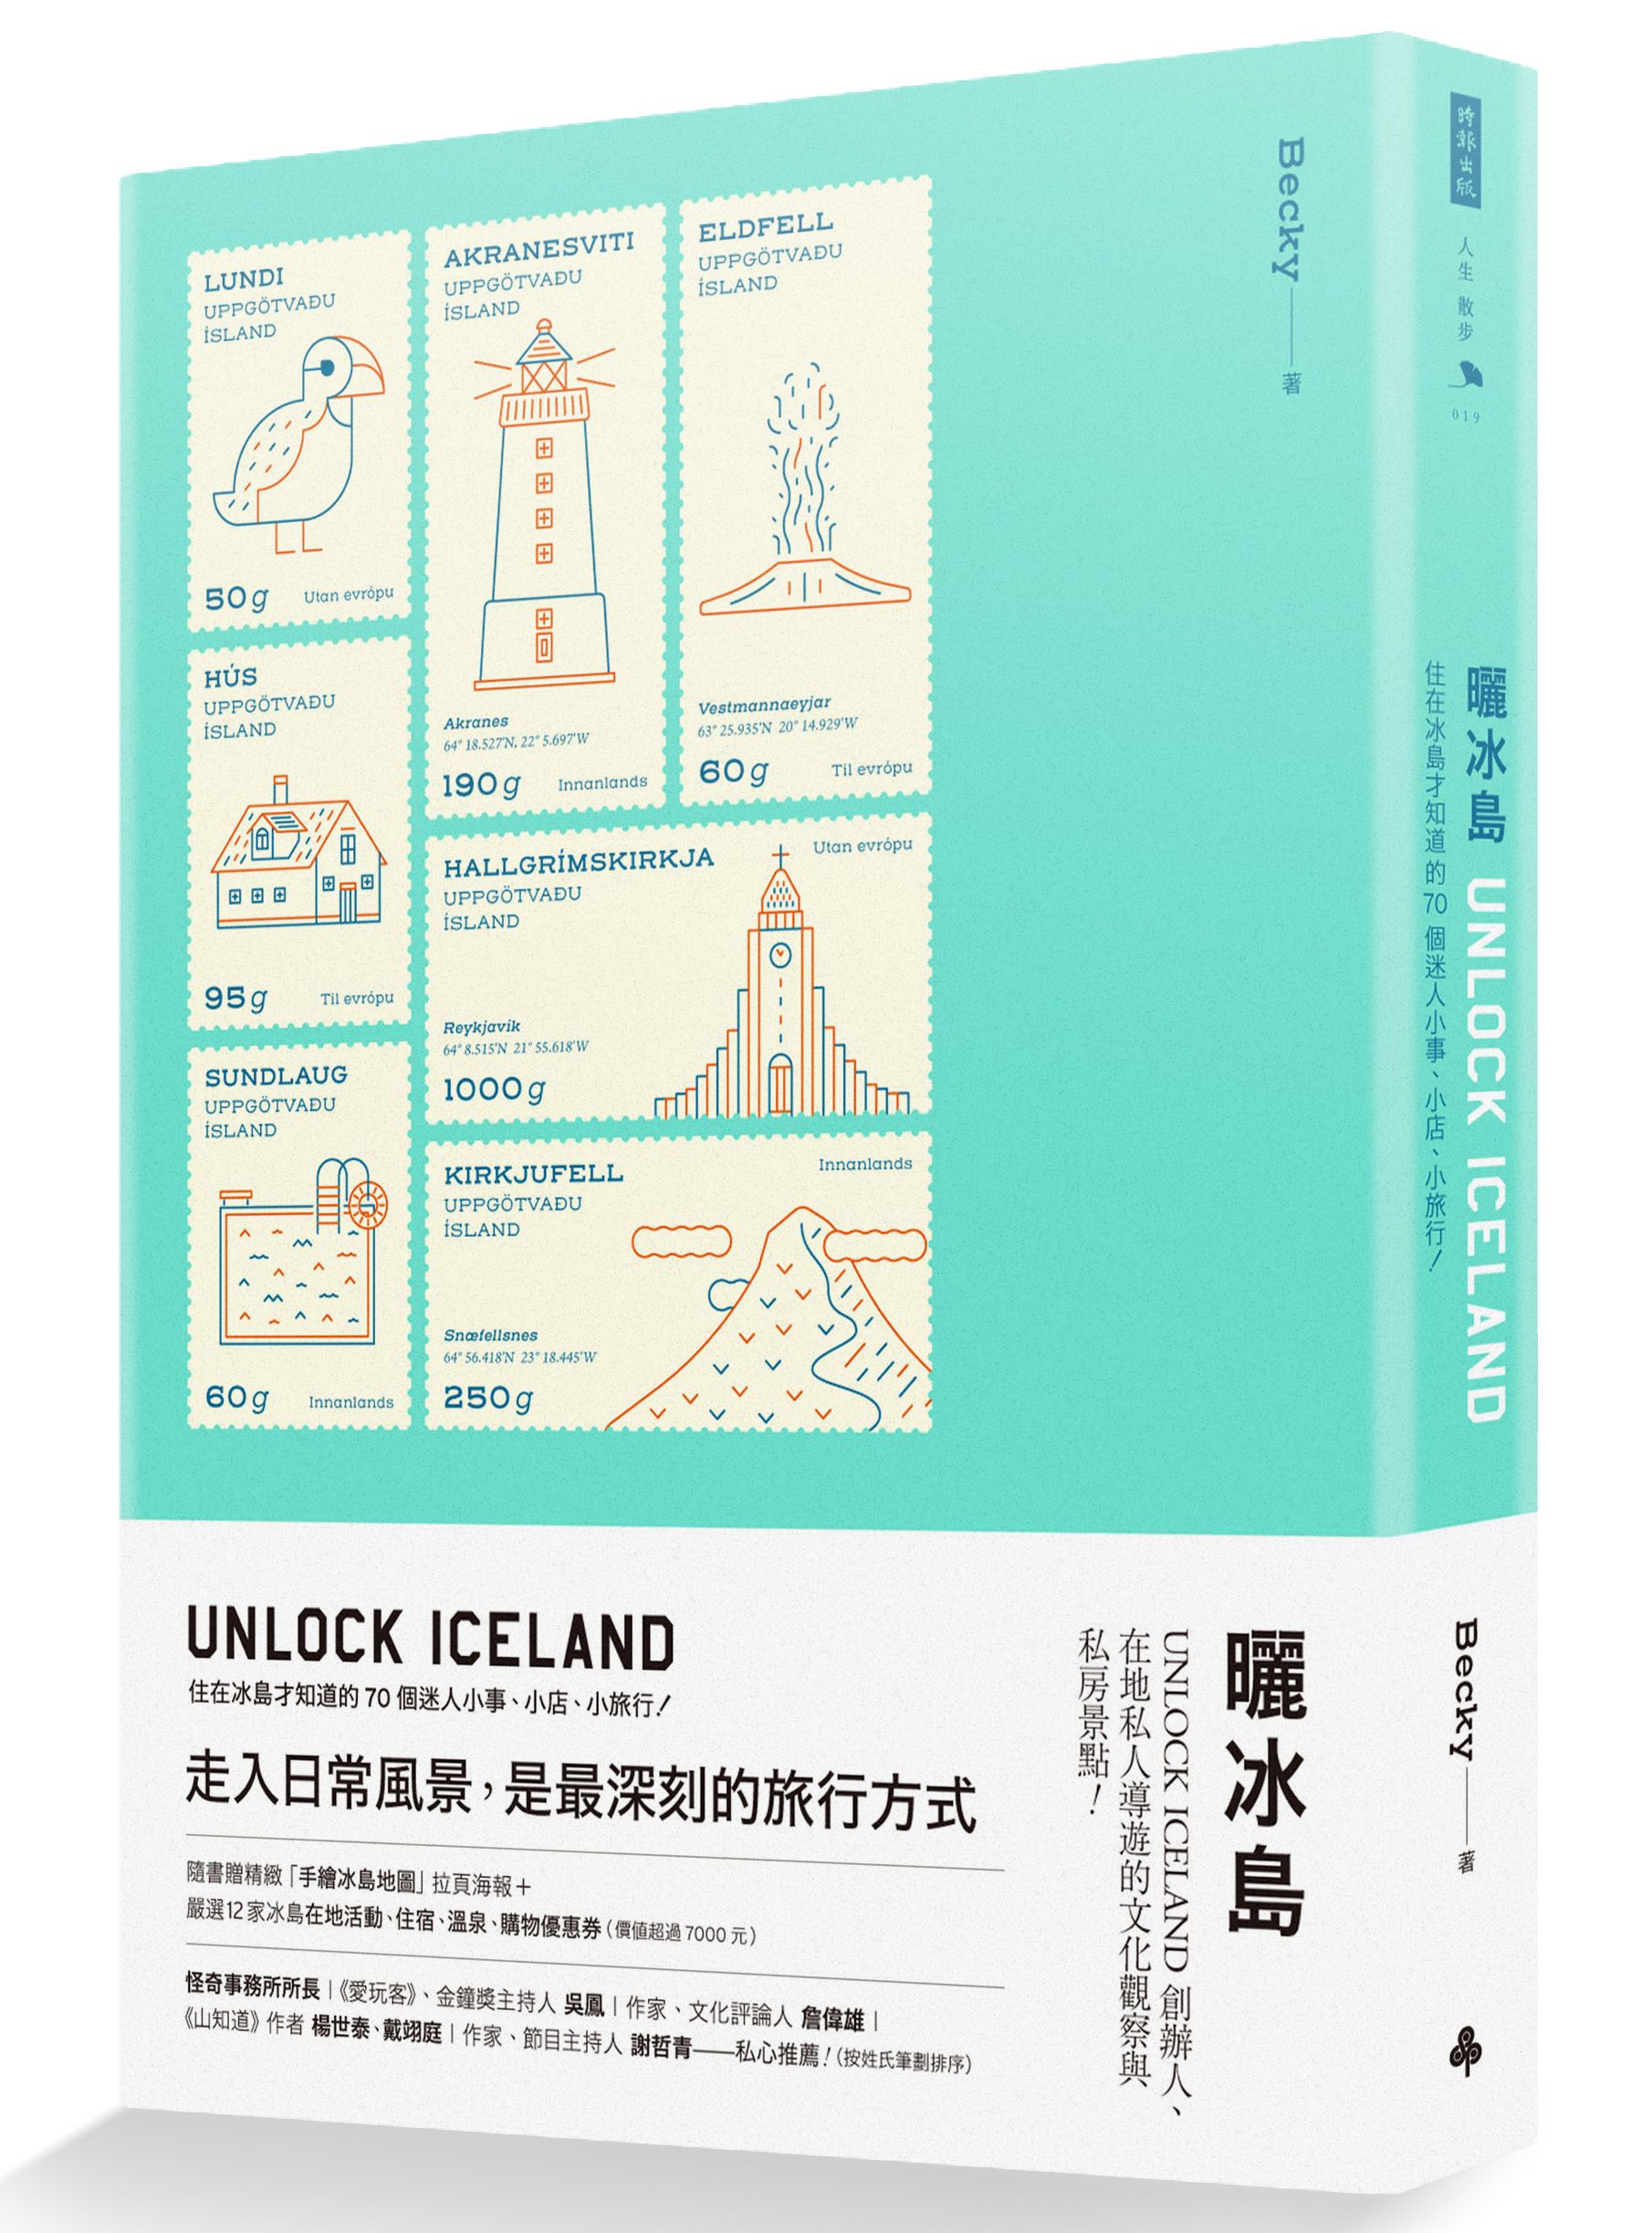 曬冰島 UNLOCK ICELAND：住在冰島才知道的70個迷人小事、小店、小旅行圖片